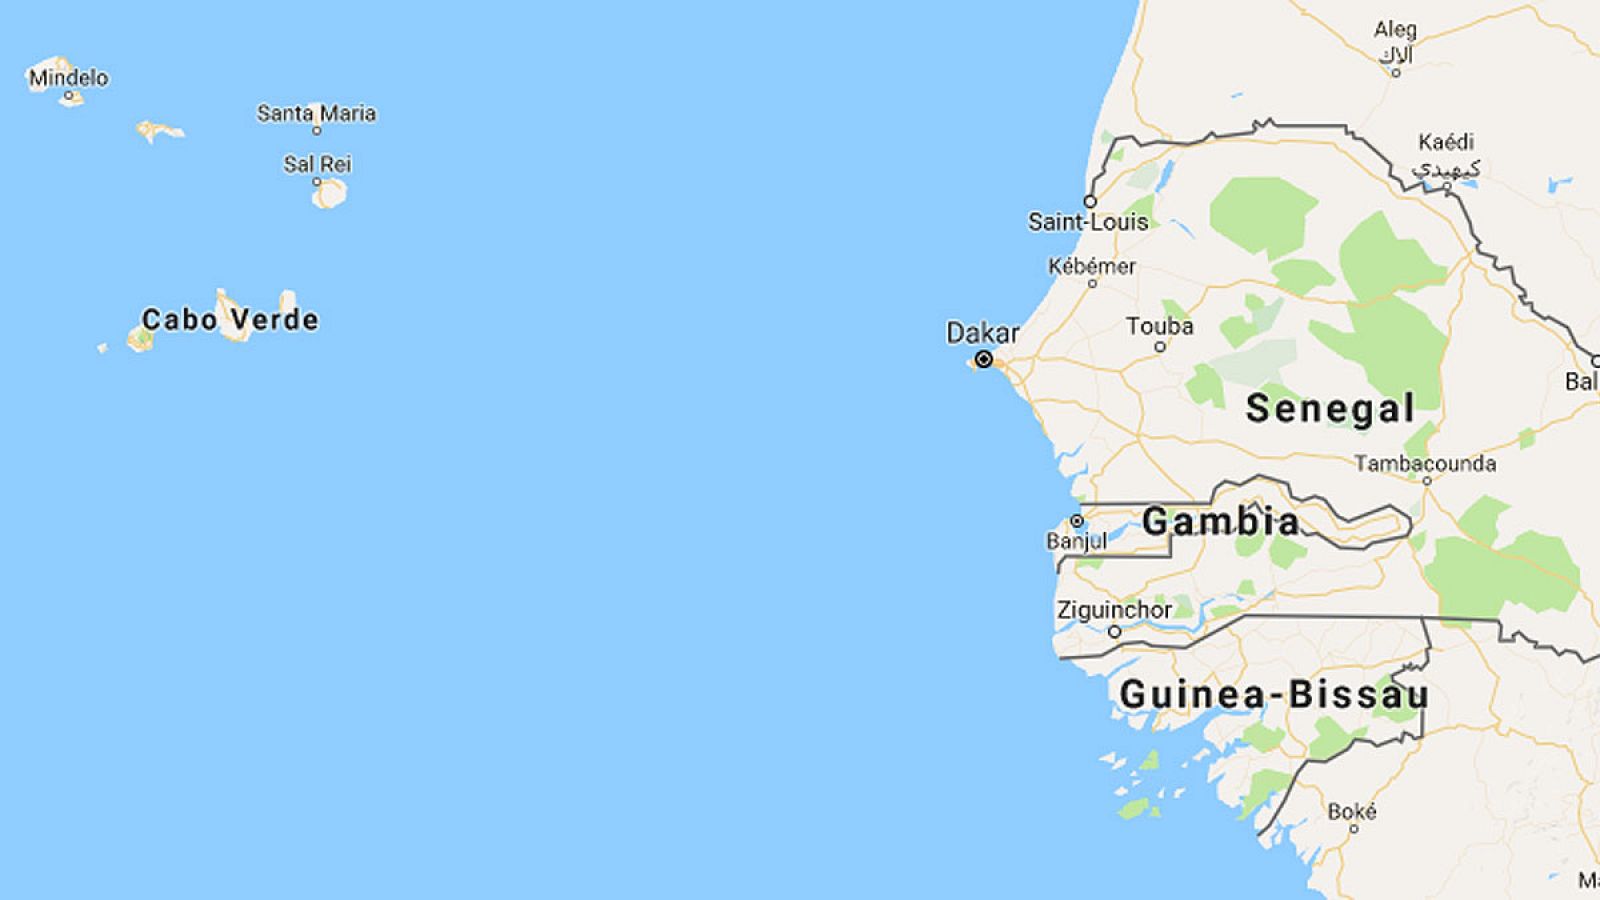 El pesquero 'Senefand Uno' se ha hundido al sur de Dakar, en aguas próximas a Senegal